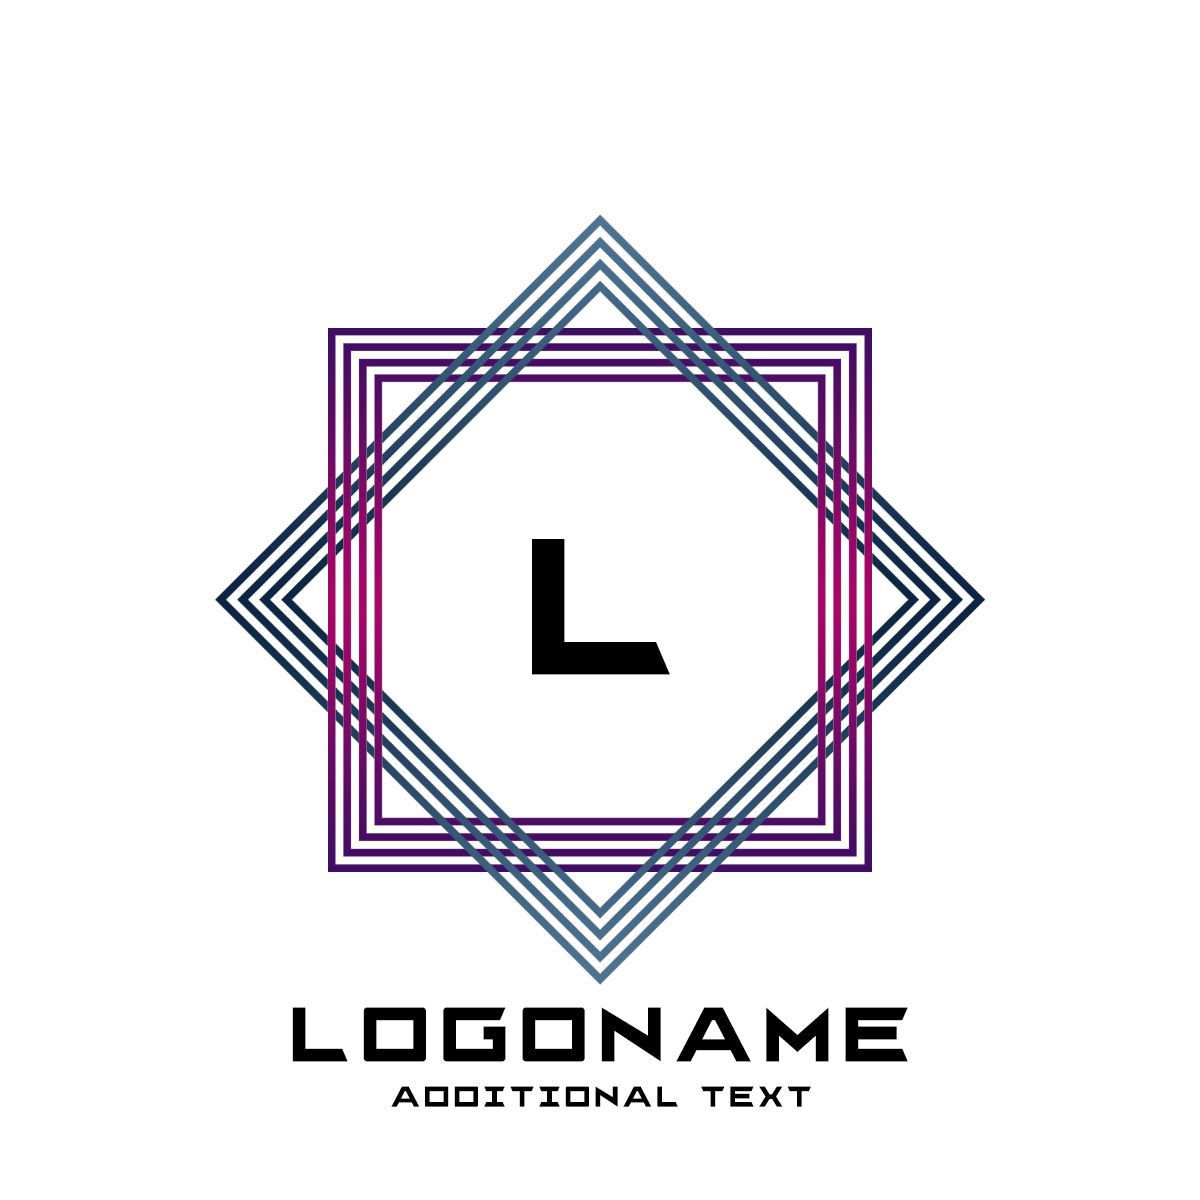 Logo: Frame